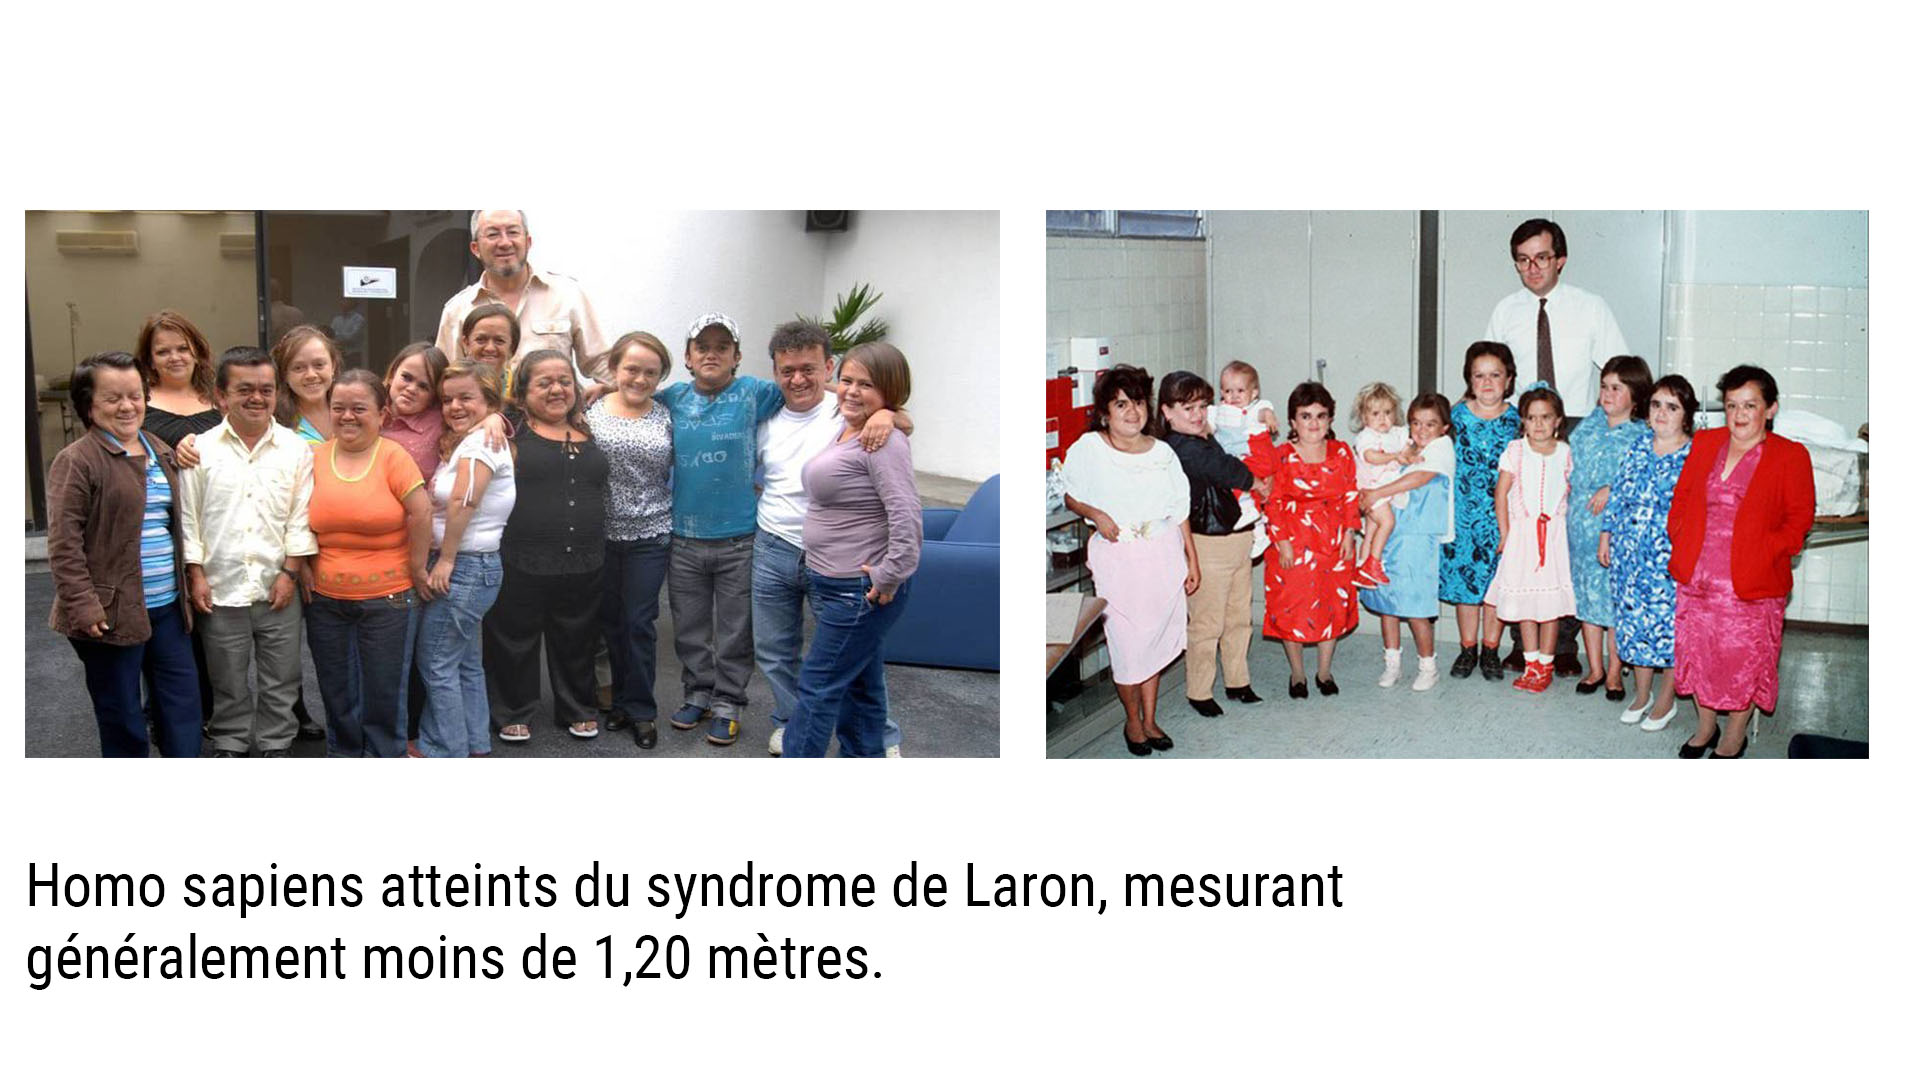 Syndrome de Laron